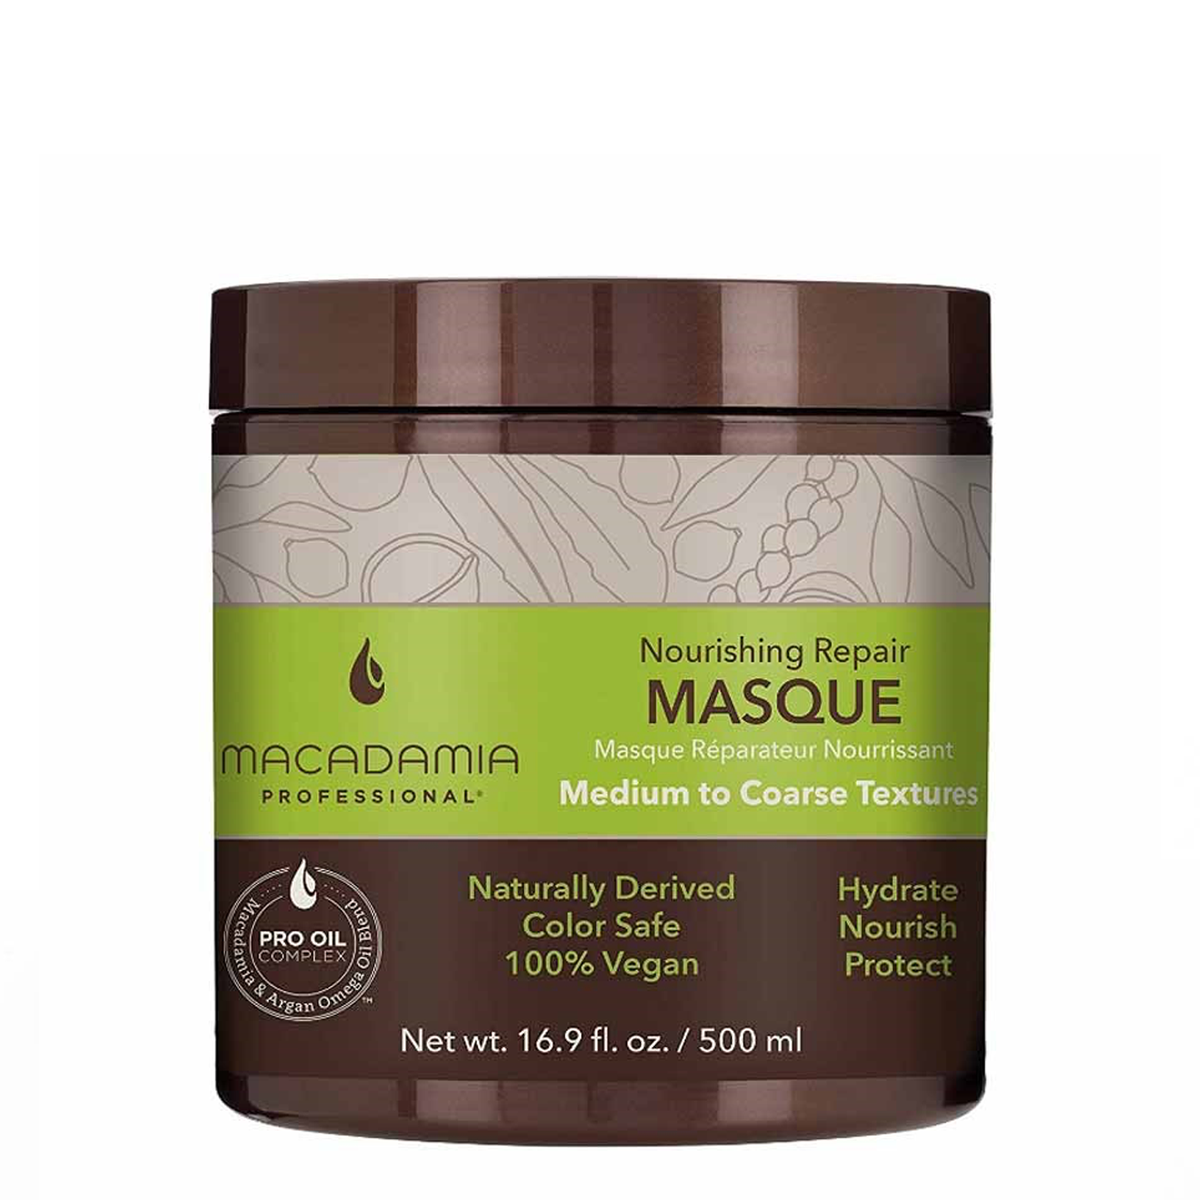 Macadamia Nourishing Repair Masque 500ml - Hairsale.se